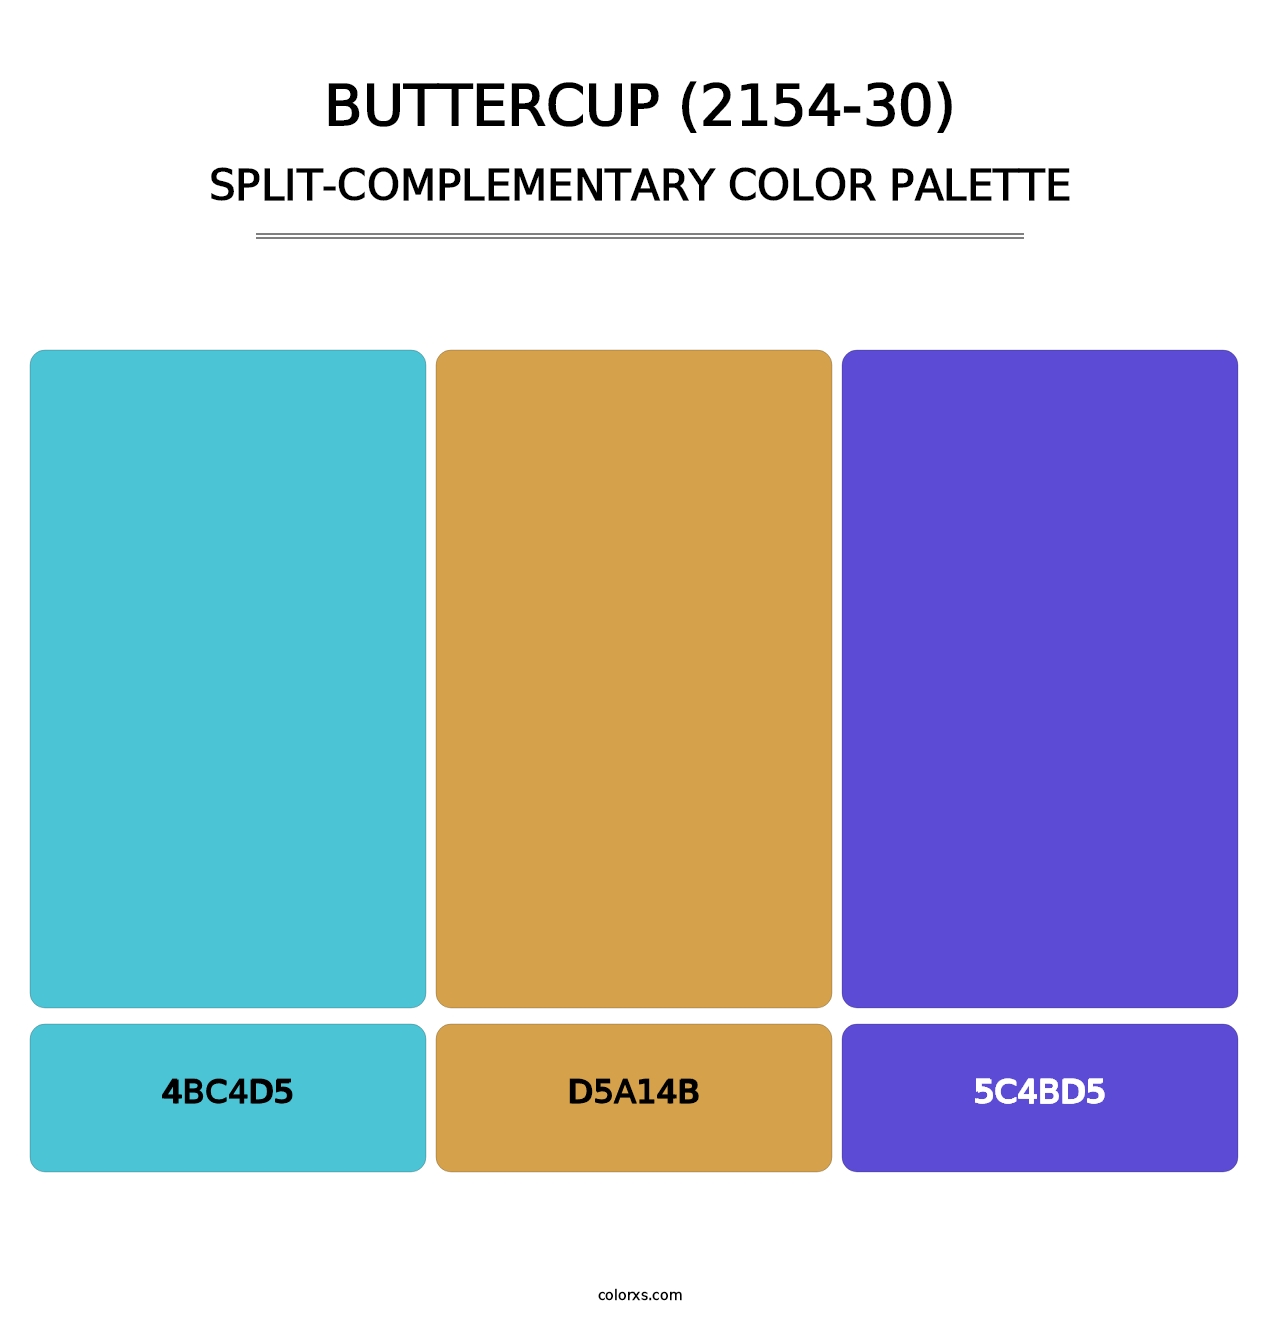 Buttercup (2154-30) - Split-Complementary Color Palette